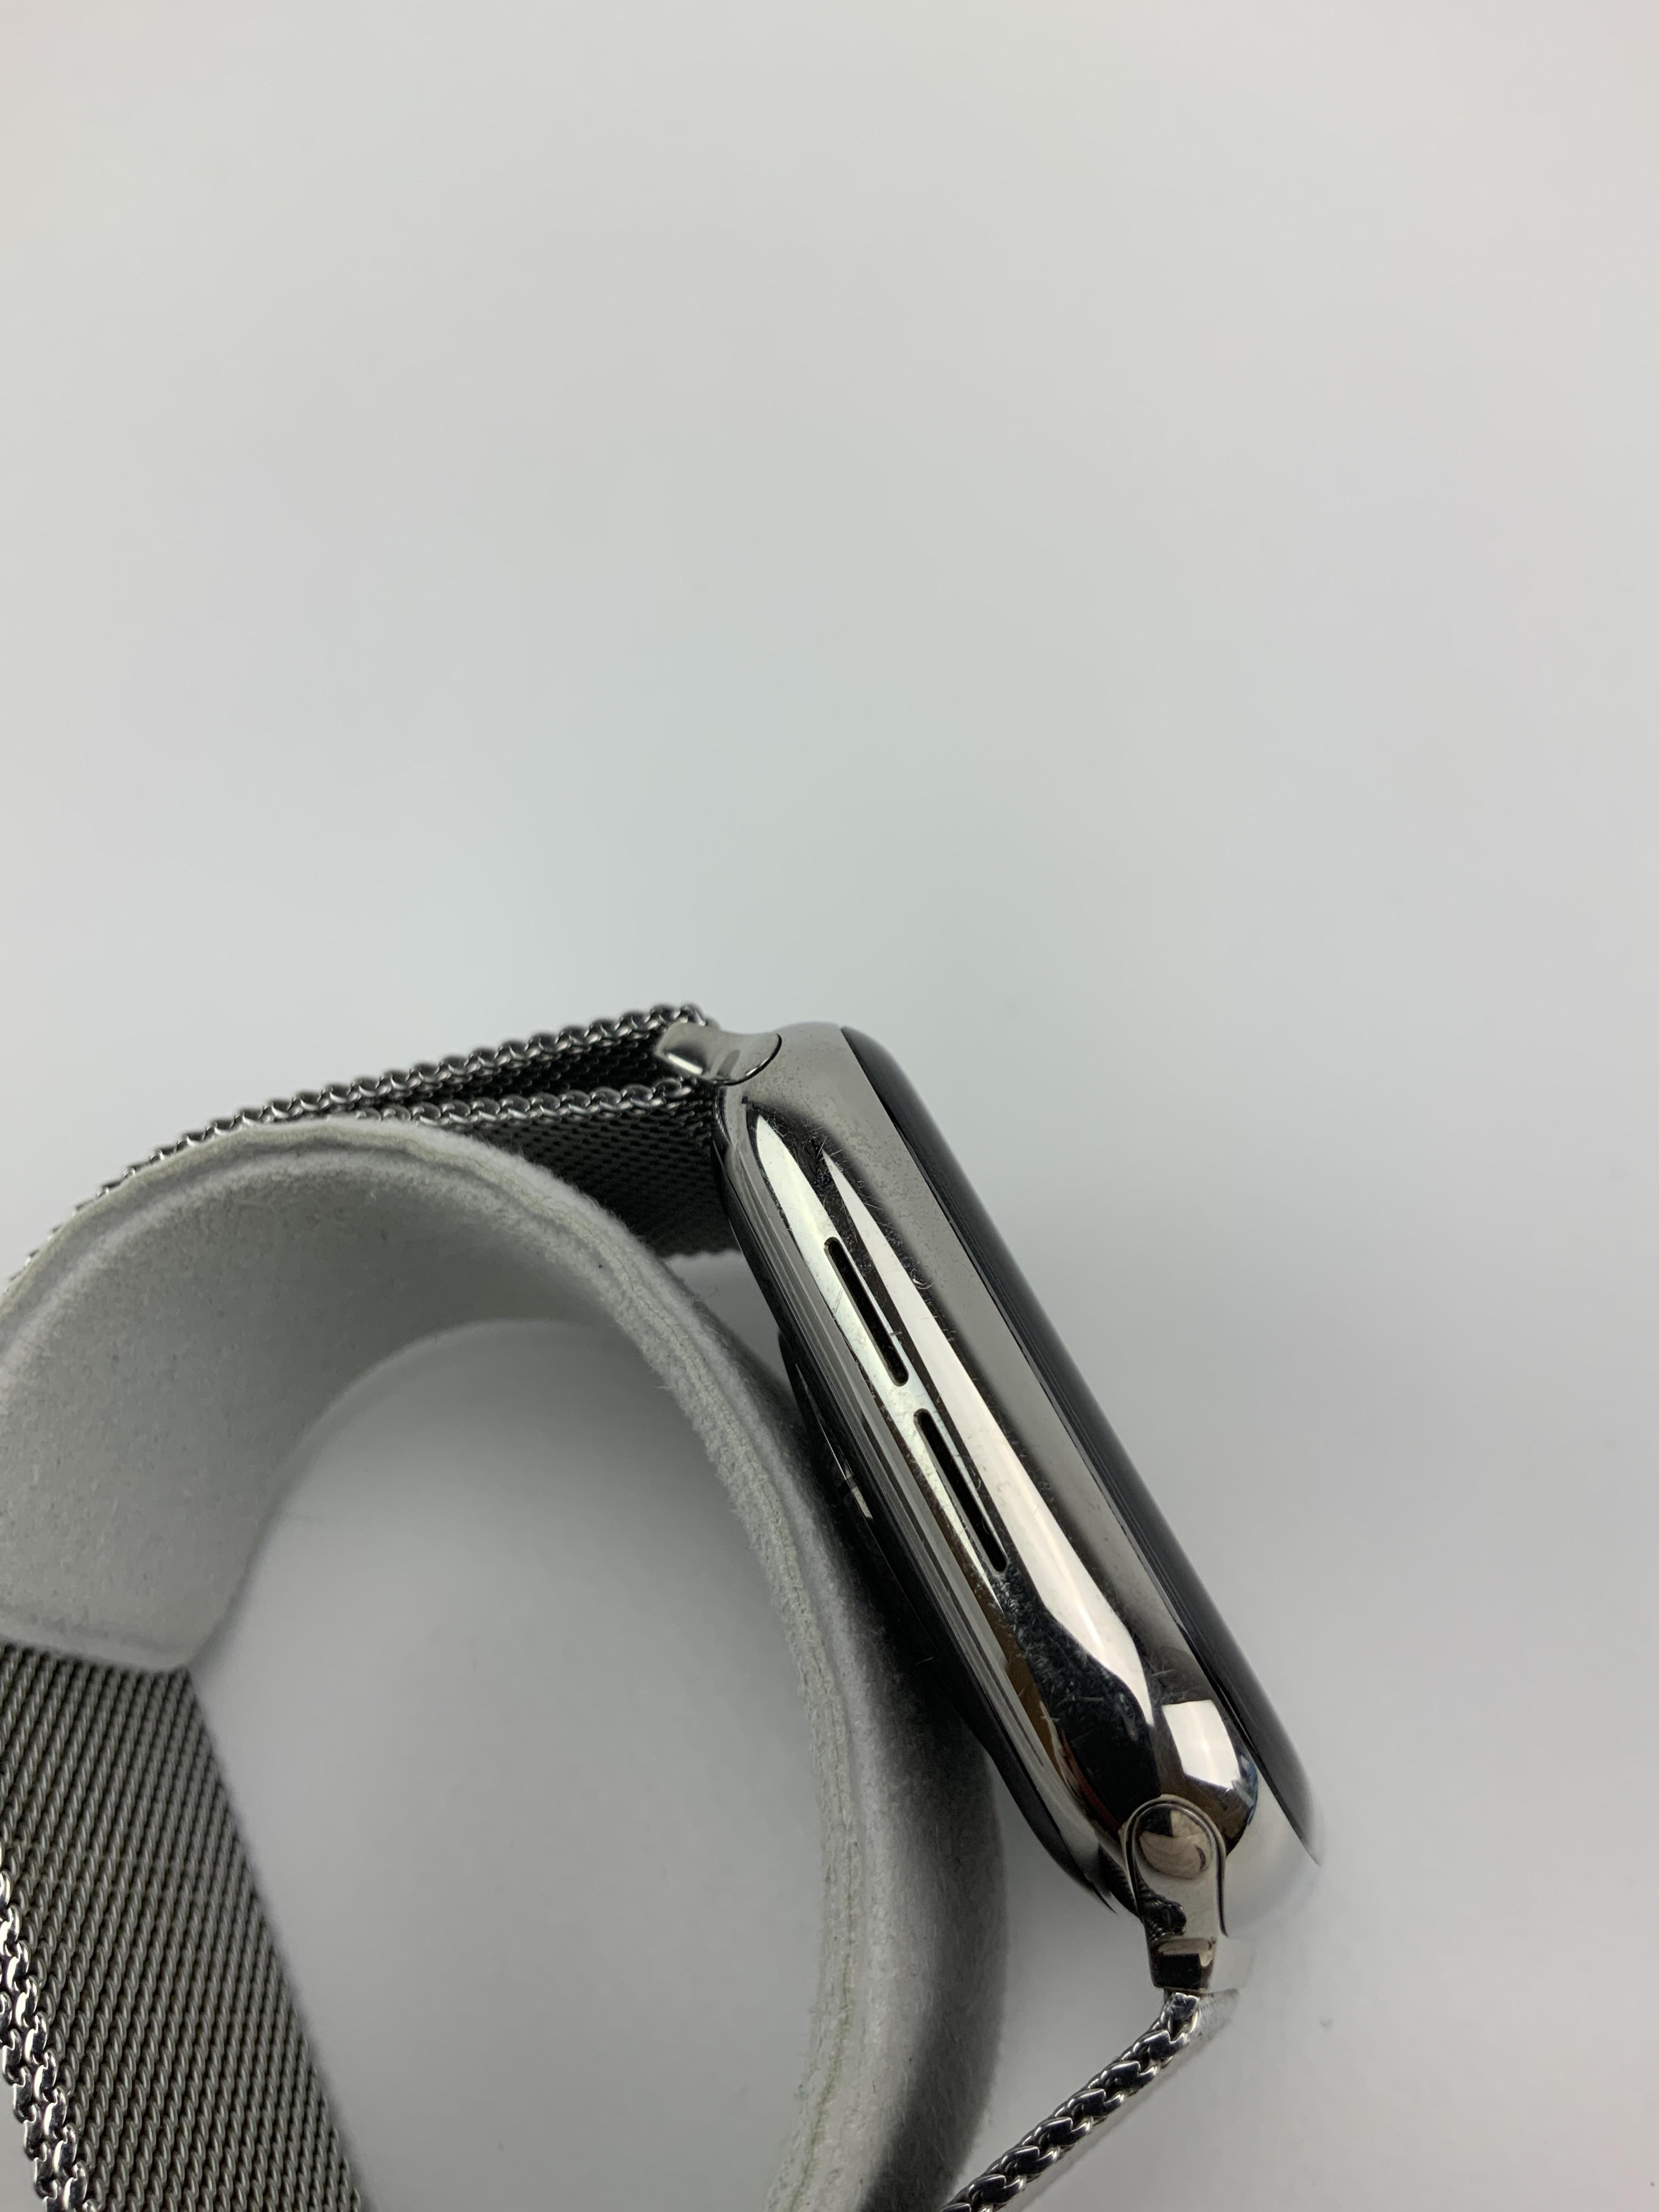 Watch Series 5 Steel Cellular (44mm), Silver, bild 4